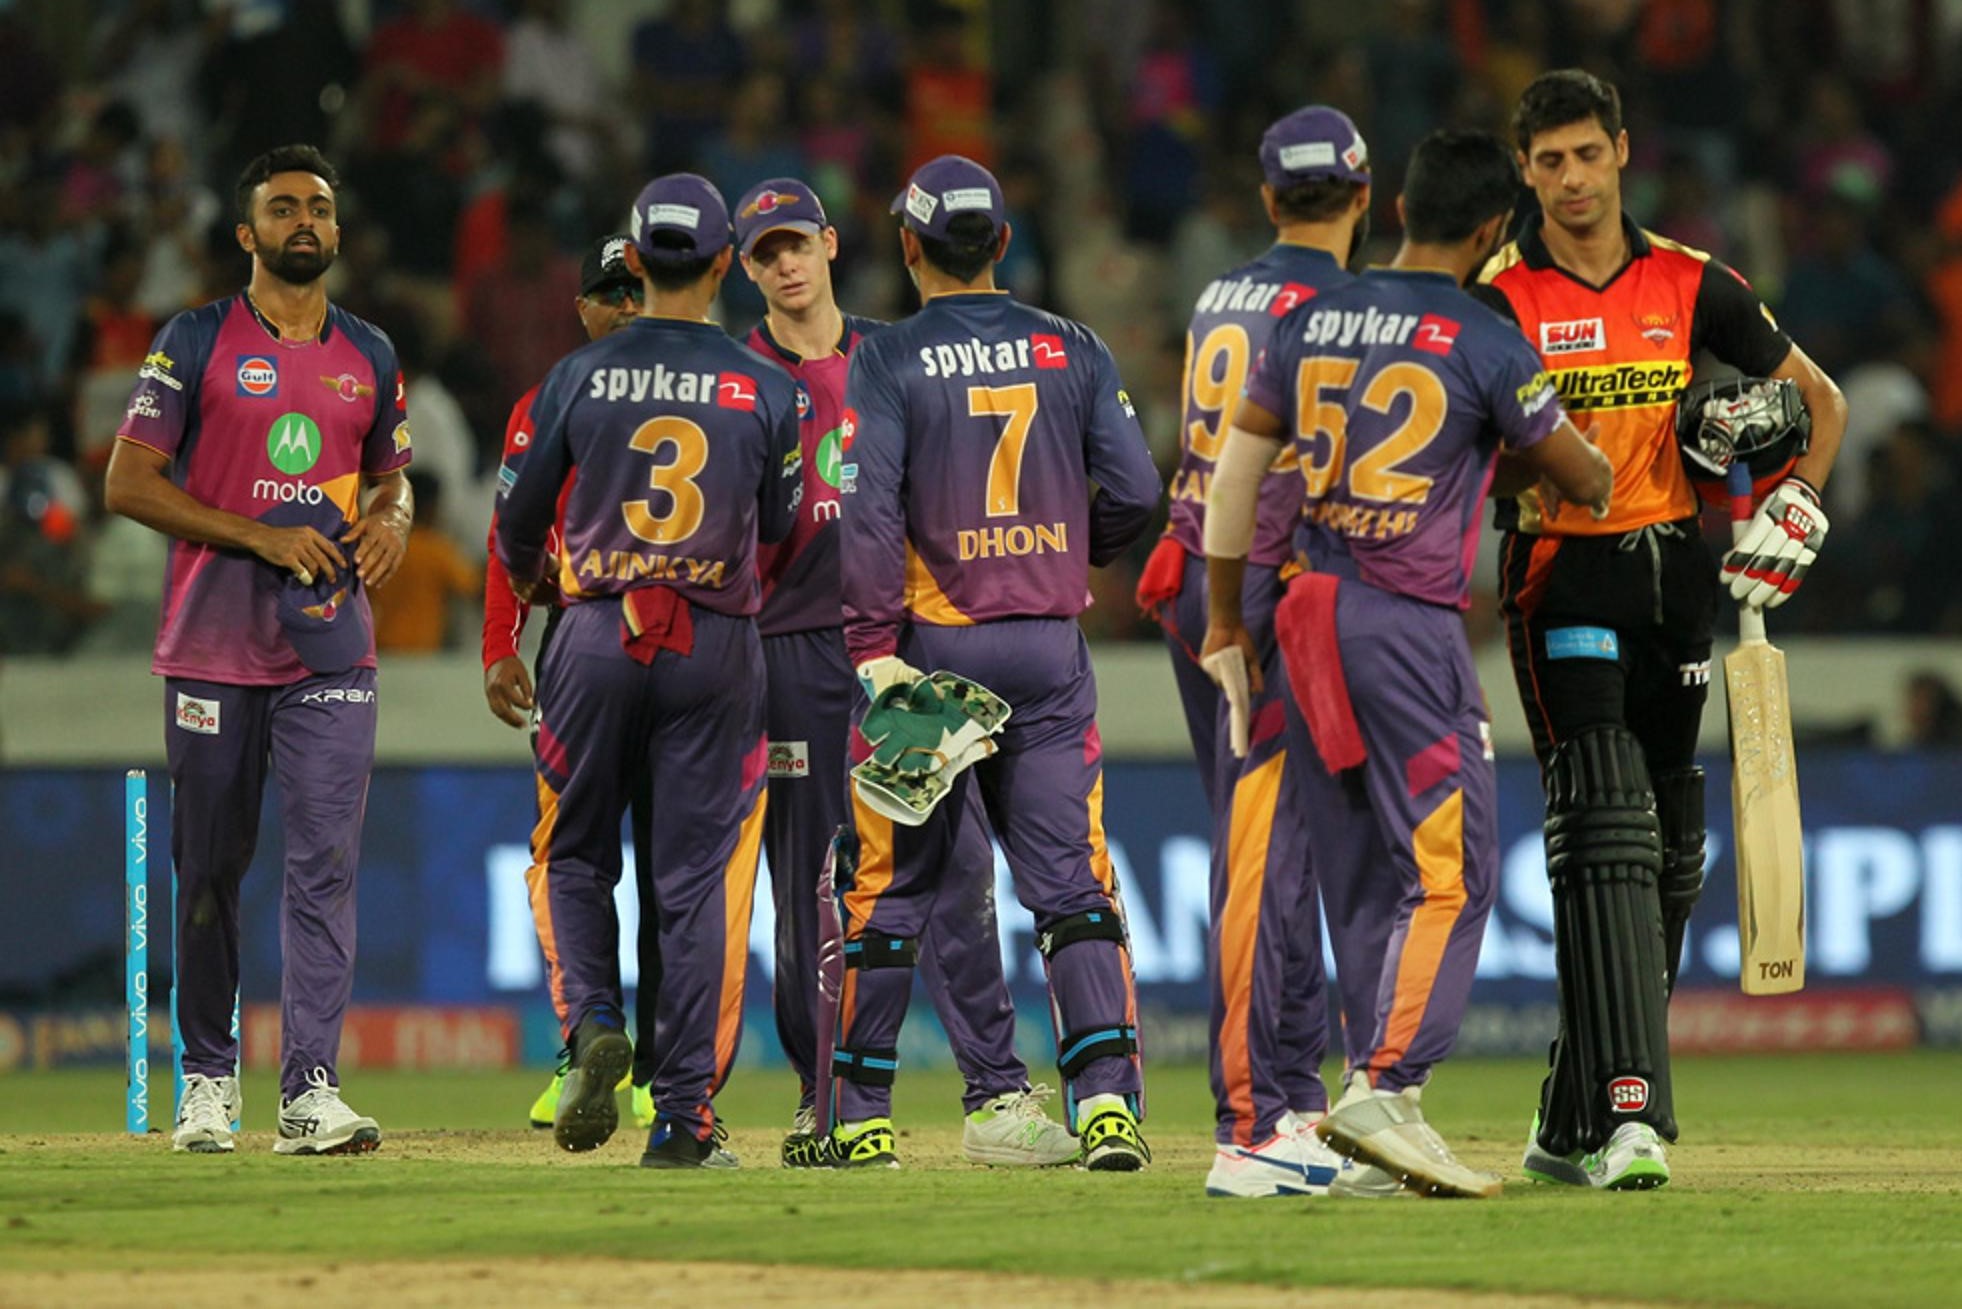 आईपीएल : डेविड वार्नर नहीं बल्कि हैदराबाद के इस खिलाड़ी की बस एक गलती की वजह से करना पड़ा टीम को हार का सामना 1